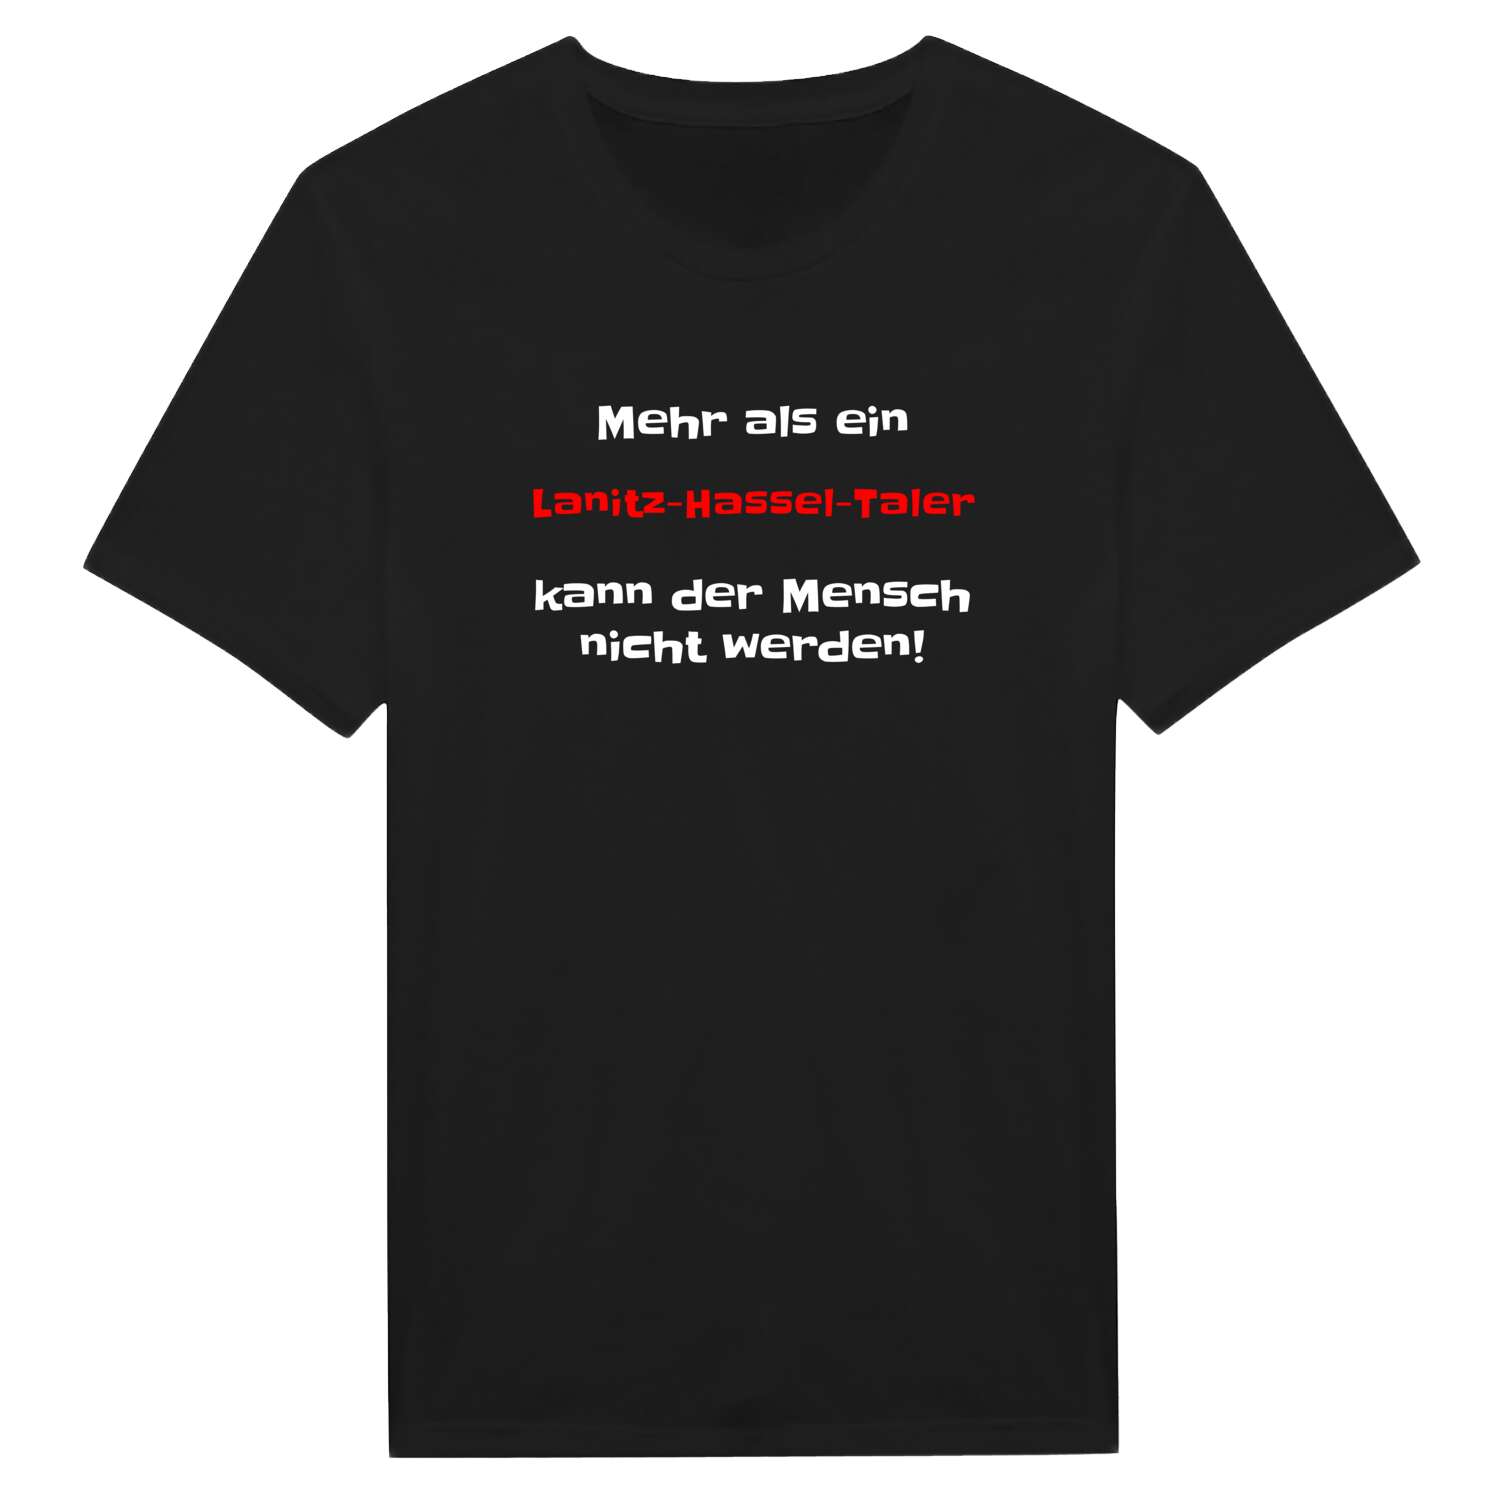 Lanitz-Hassel-Tal T-Shirt »Mehr als ein«